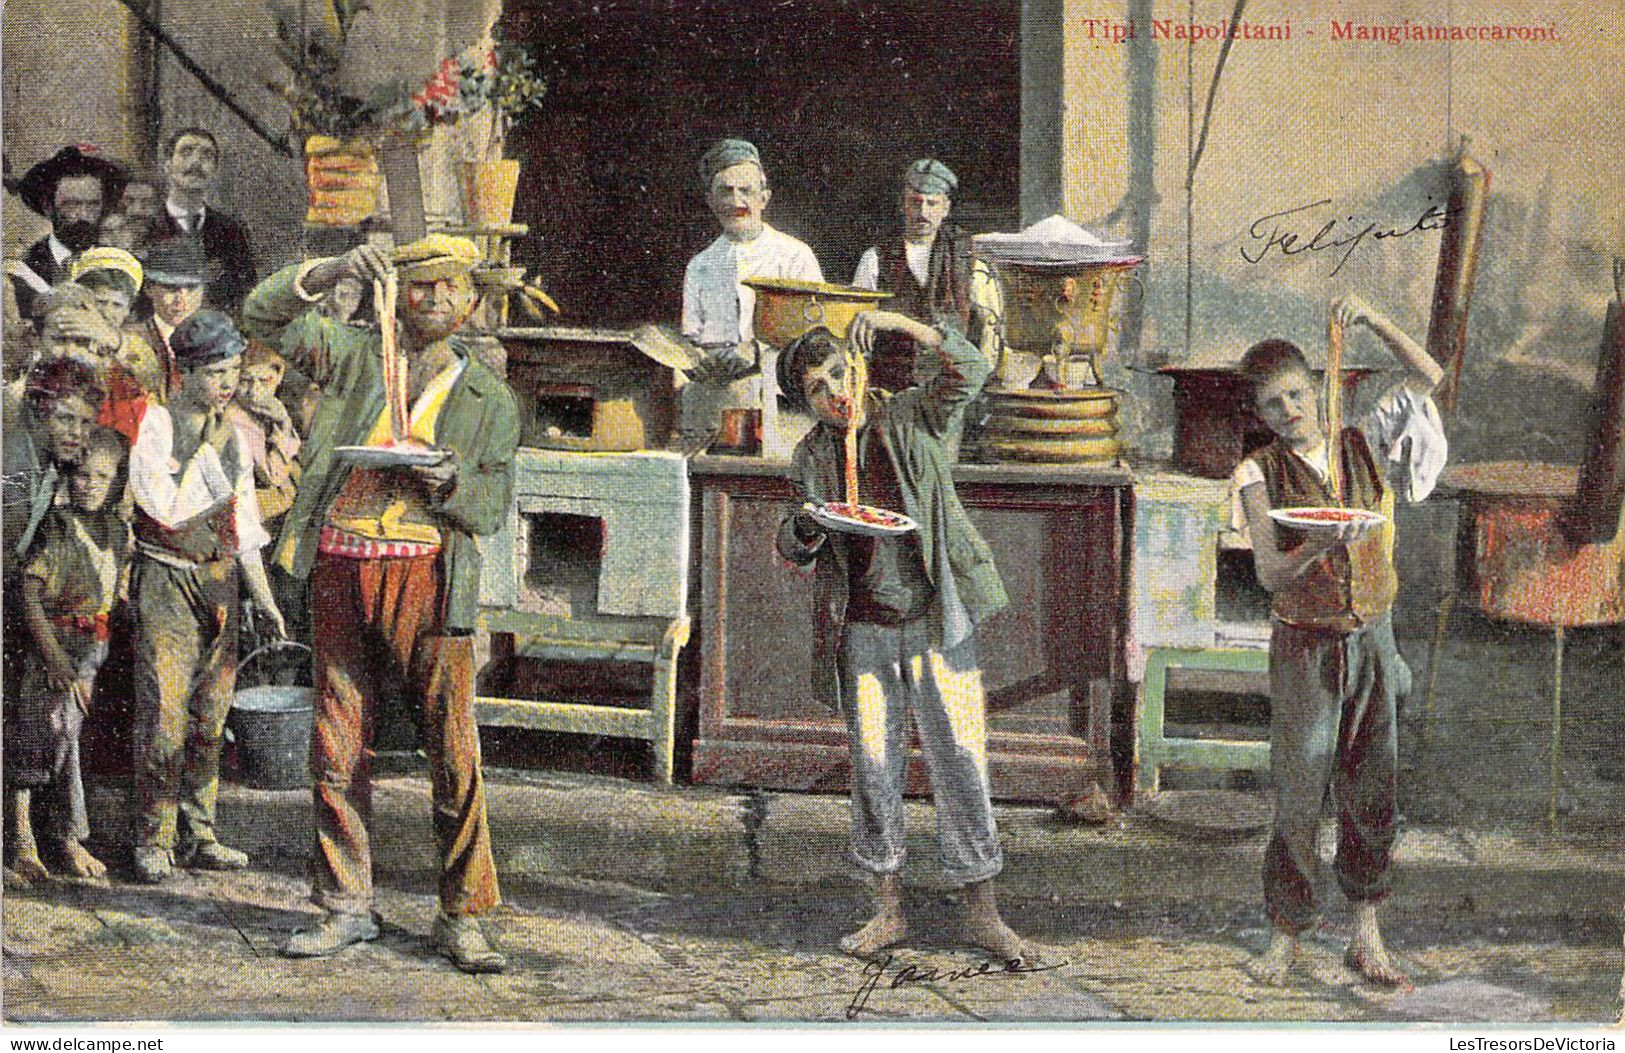 Italie - Tipi Napoletania - Mangiamaccaoni - Colorisé - Carte Postale Ancienne - Napoli (Naples)